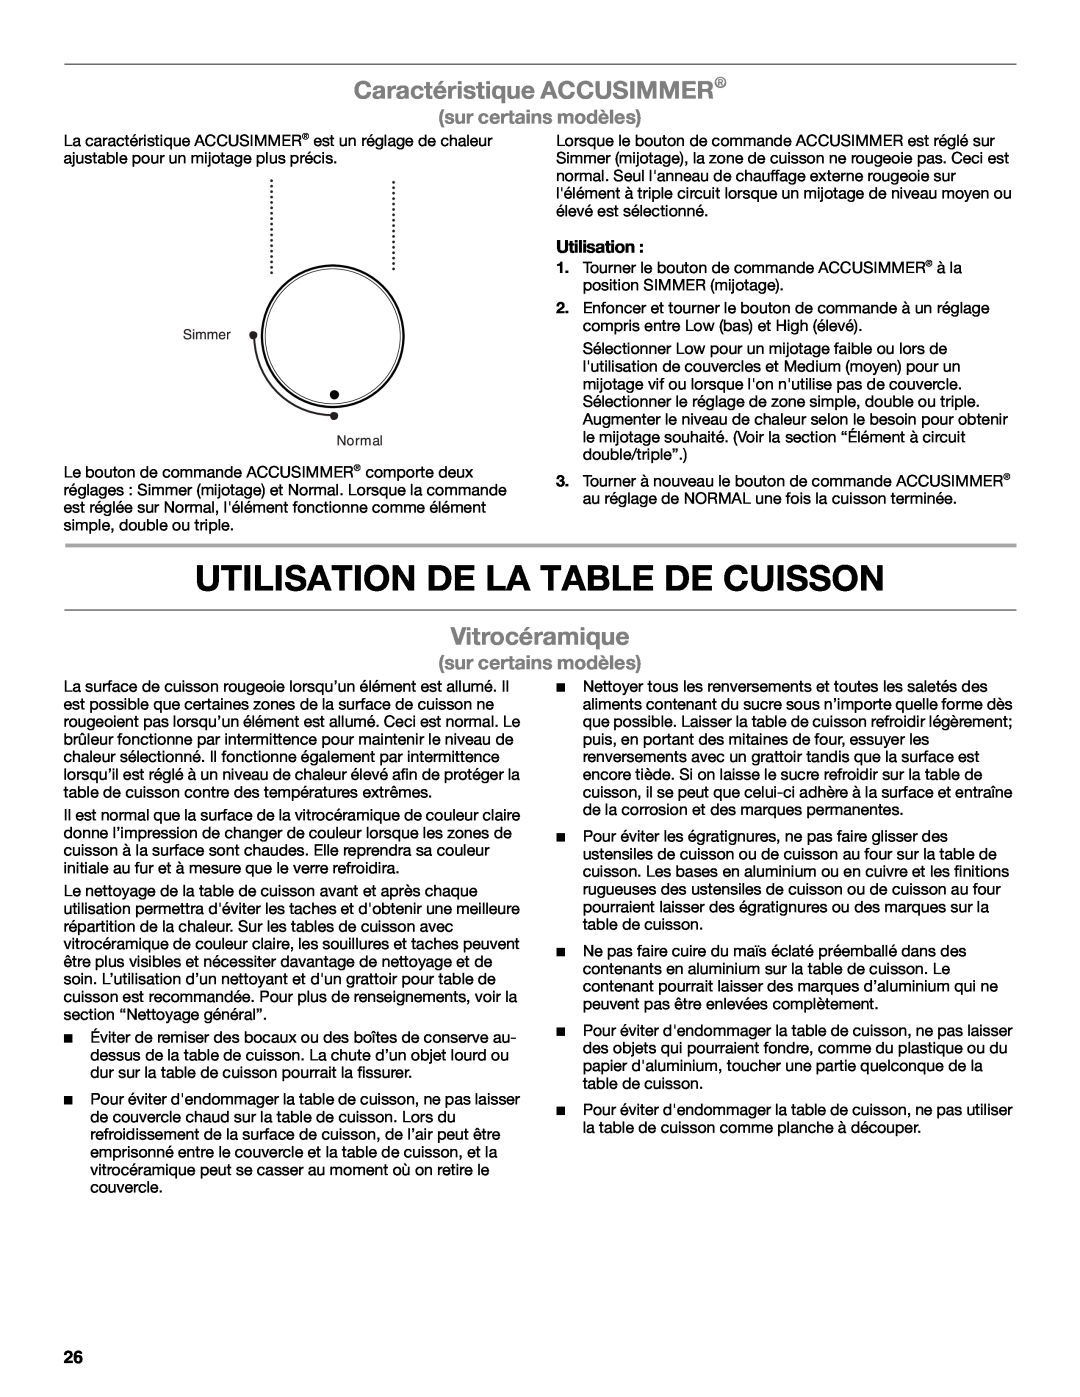 Whirlpool G7CE3055XS Utilisation De La Table De Cuisson, Caractéristique ACCUSIMMER, Vitrocéramique, sur certains modèles 